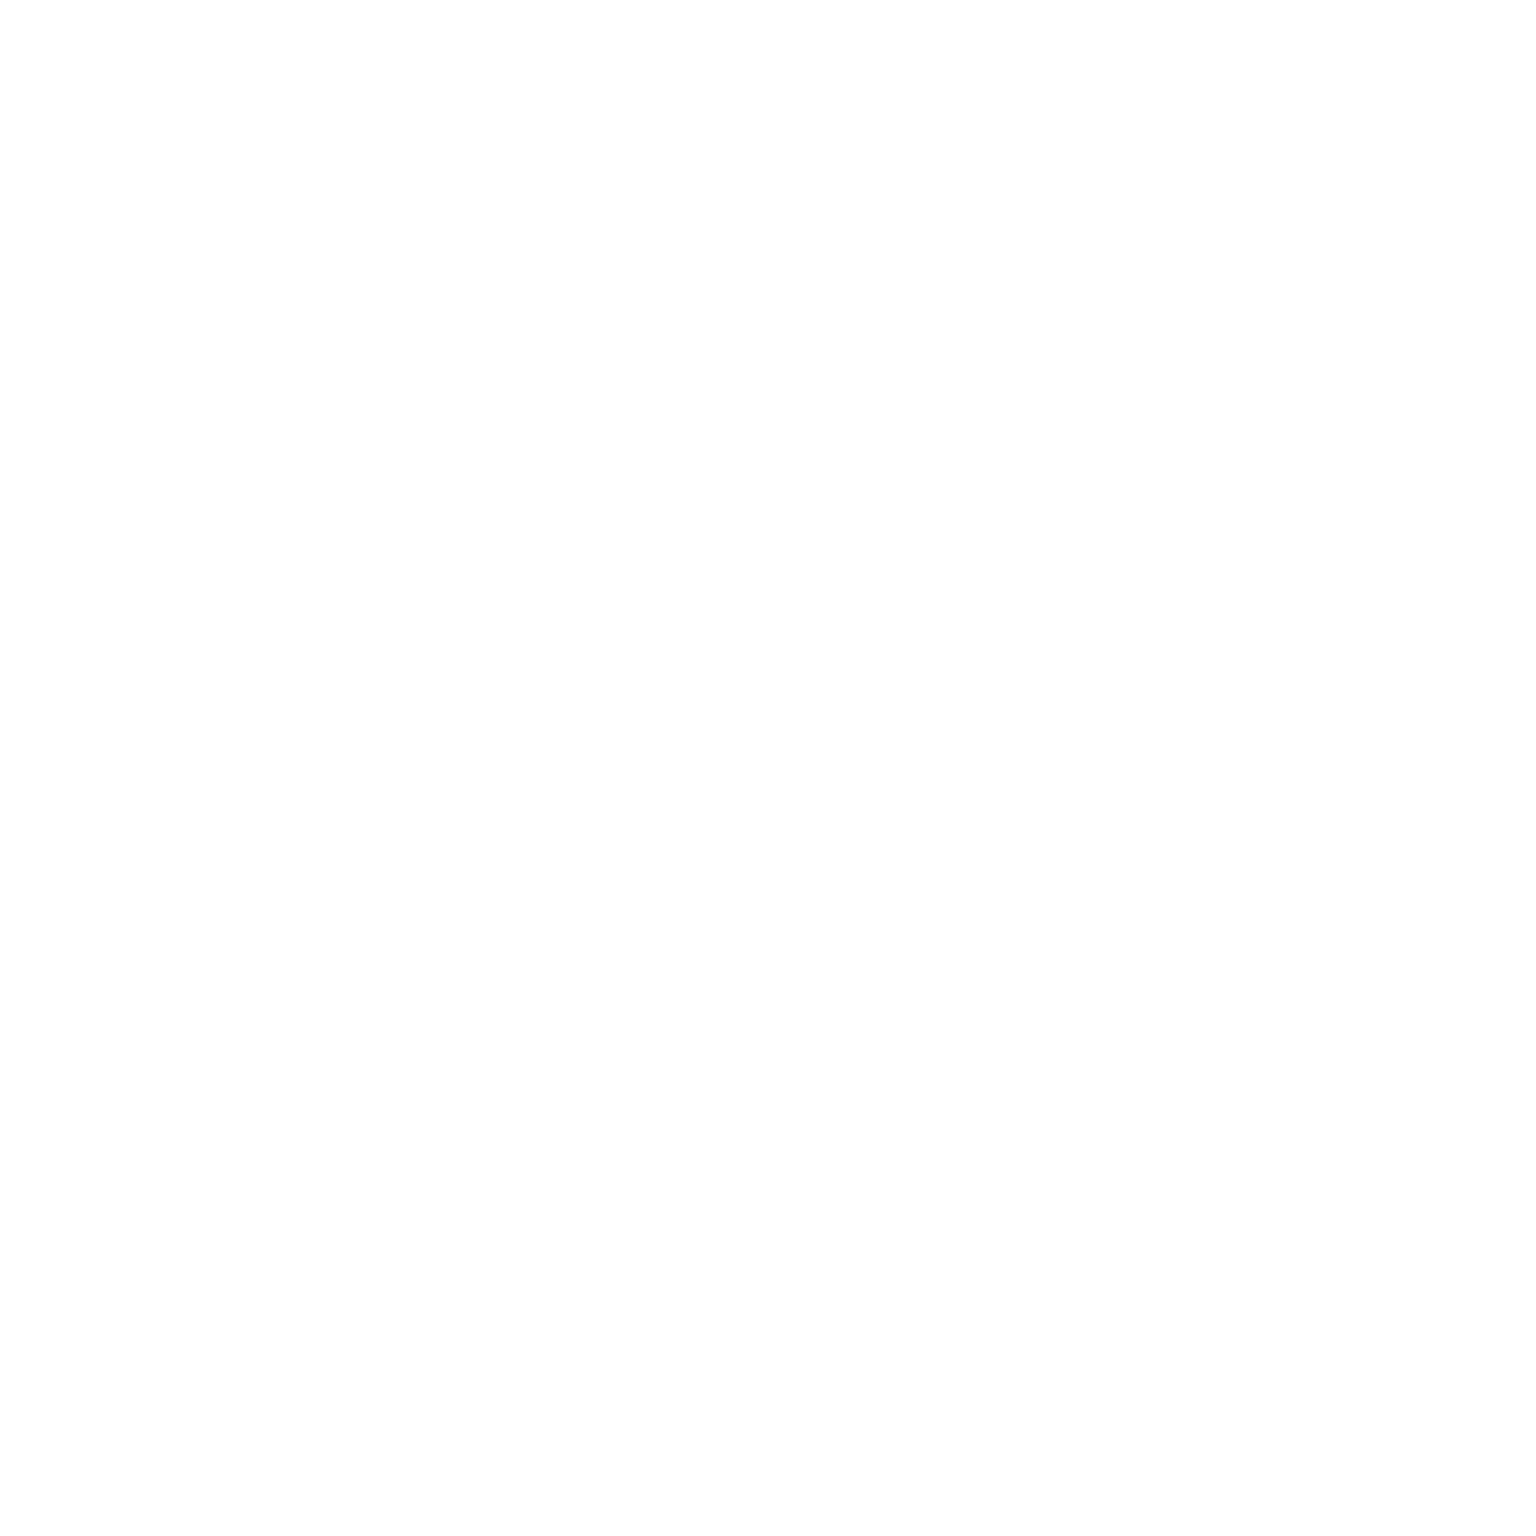 SDG 12